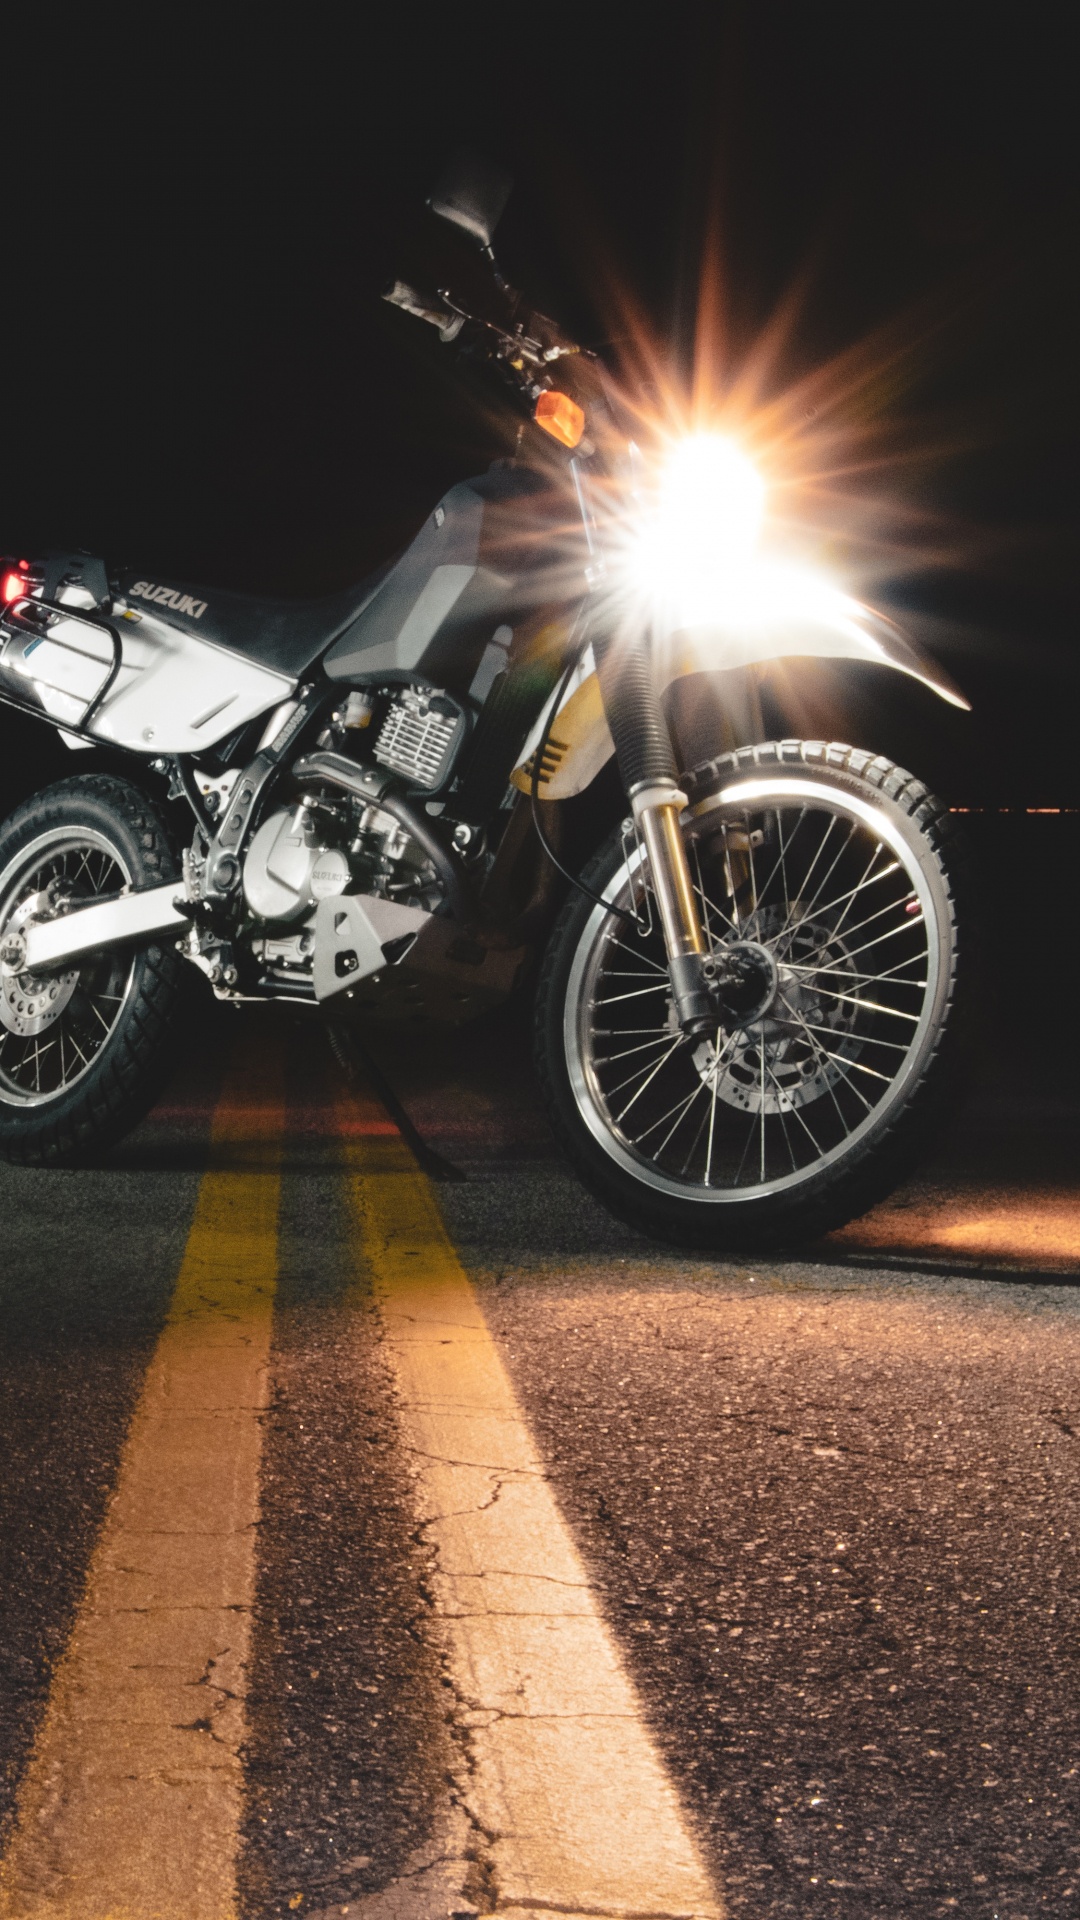 Moto Noir et Argent Sur Route Pendant la Nuit. Wallpaper in 1080x1920 Resolution